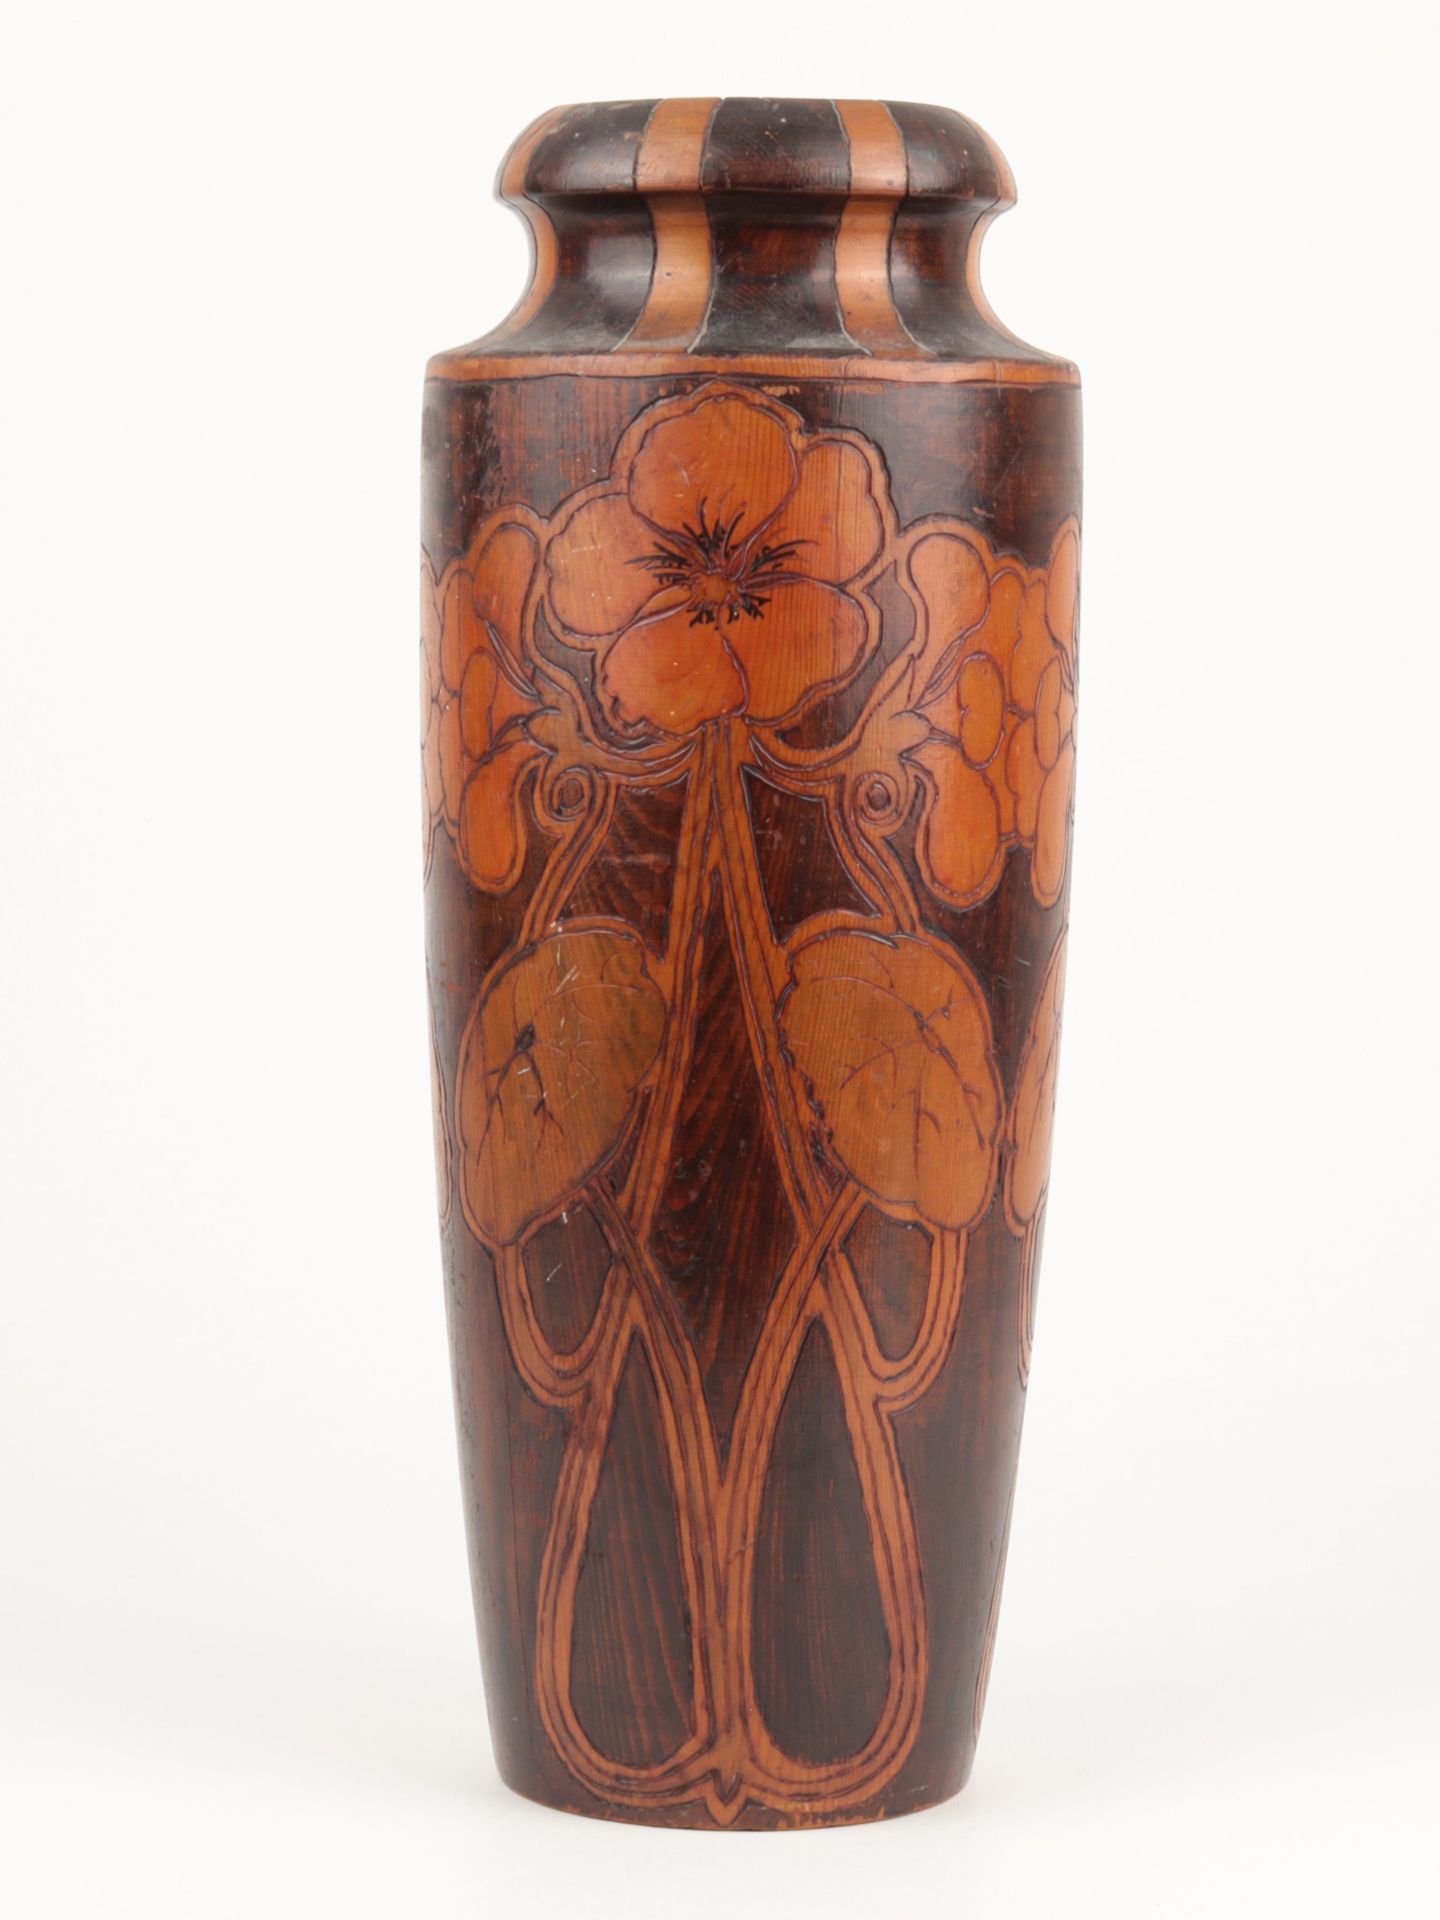 Jugendstil - Vase um 1910, Australien, Holz, gedrechselt, Ritzdekor, hell- u. dunkel g - Image 2 of 5